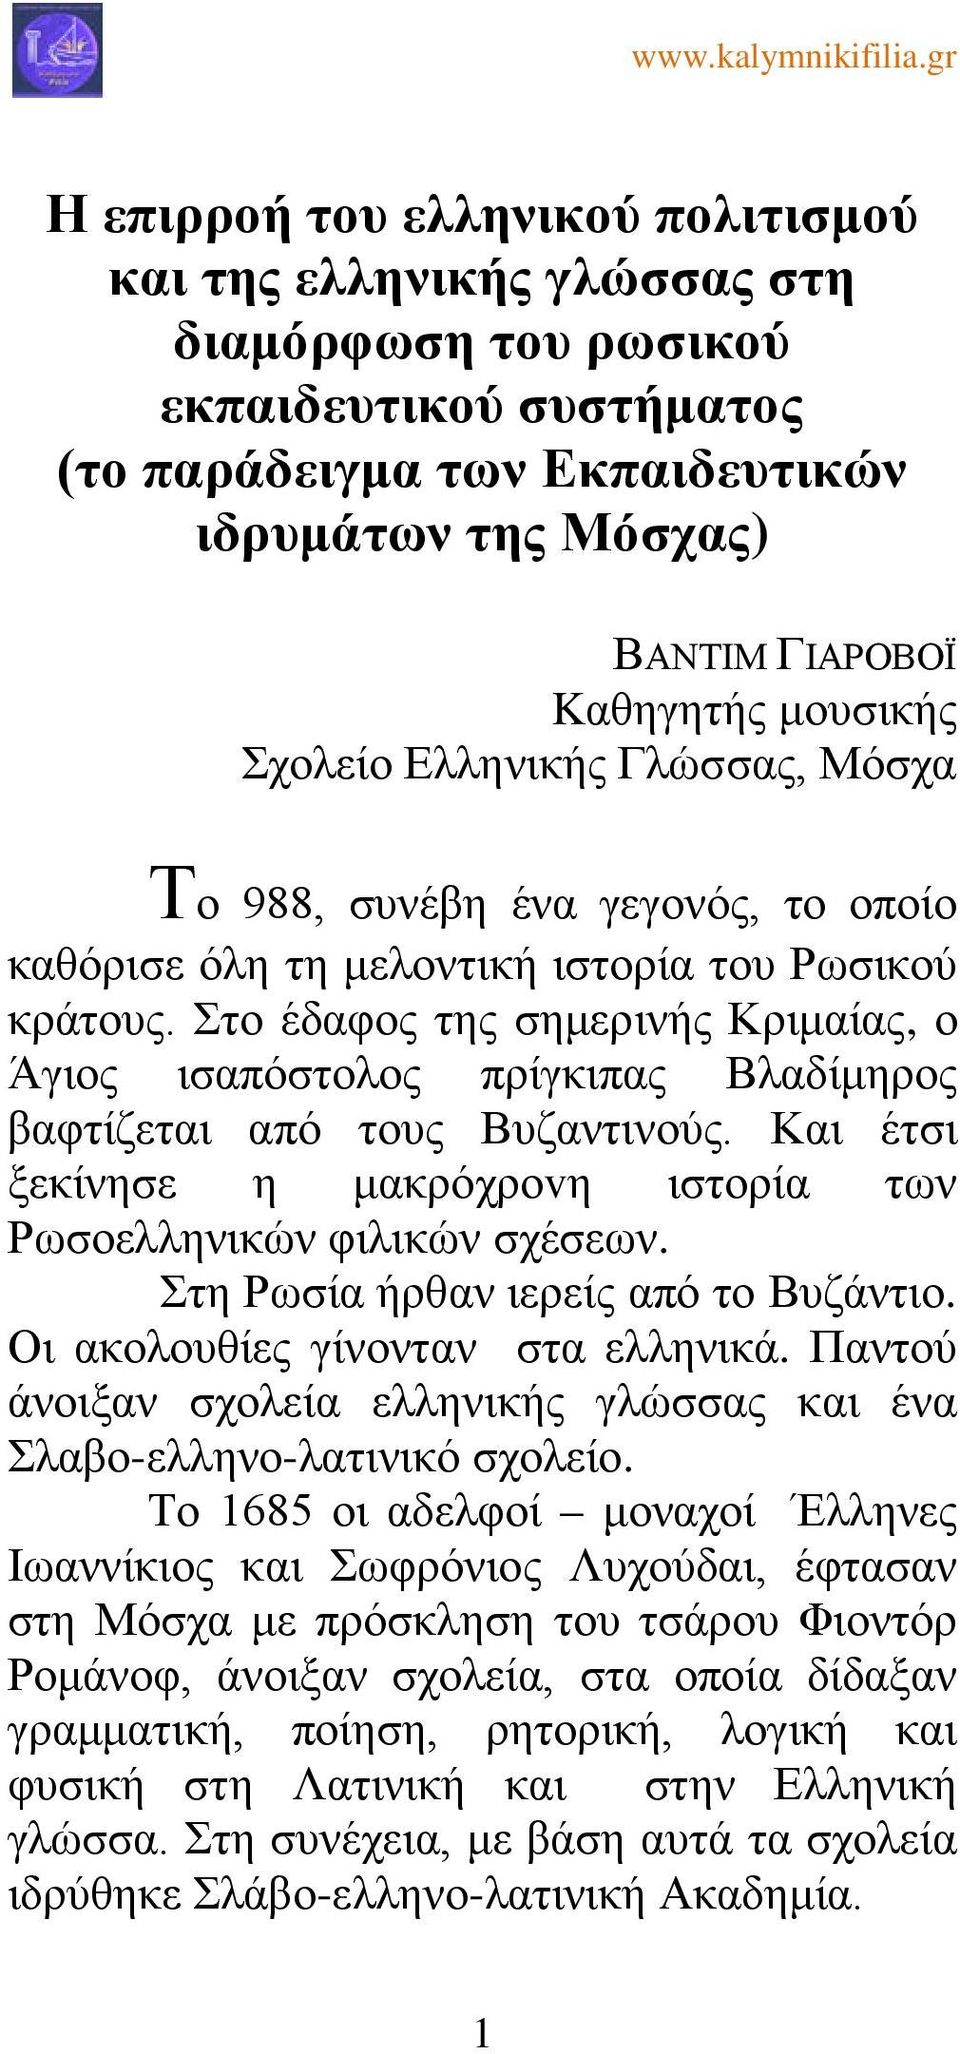 Στο έδαφος της σημερινής Κριμαίας, ο Άγιος ισαπόστολος πρίγκιπας Βλαδίμηρος βαφτίζεται από τους Βυζαντινούς. Και έτσι ξεκίνησε η μακρόχροvη ιστορία των Ρωσοελληνικών φιλικών σχέσεων.